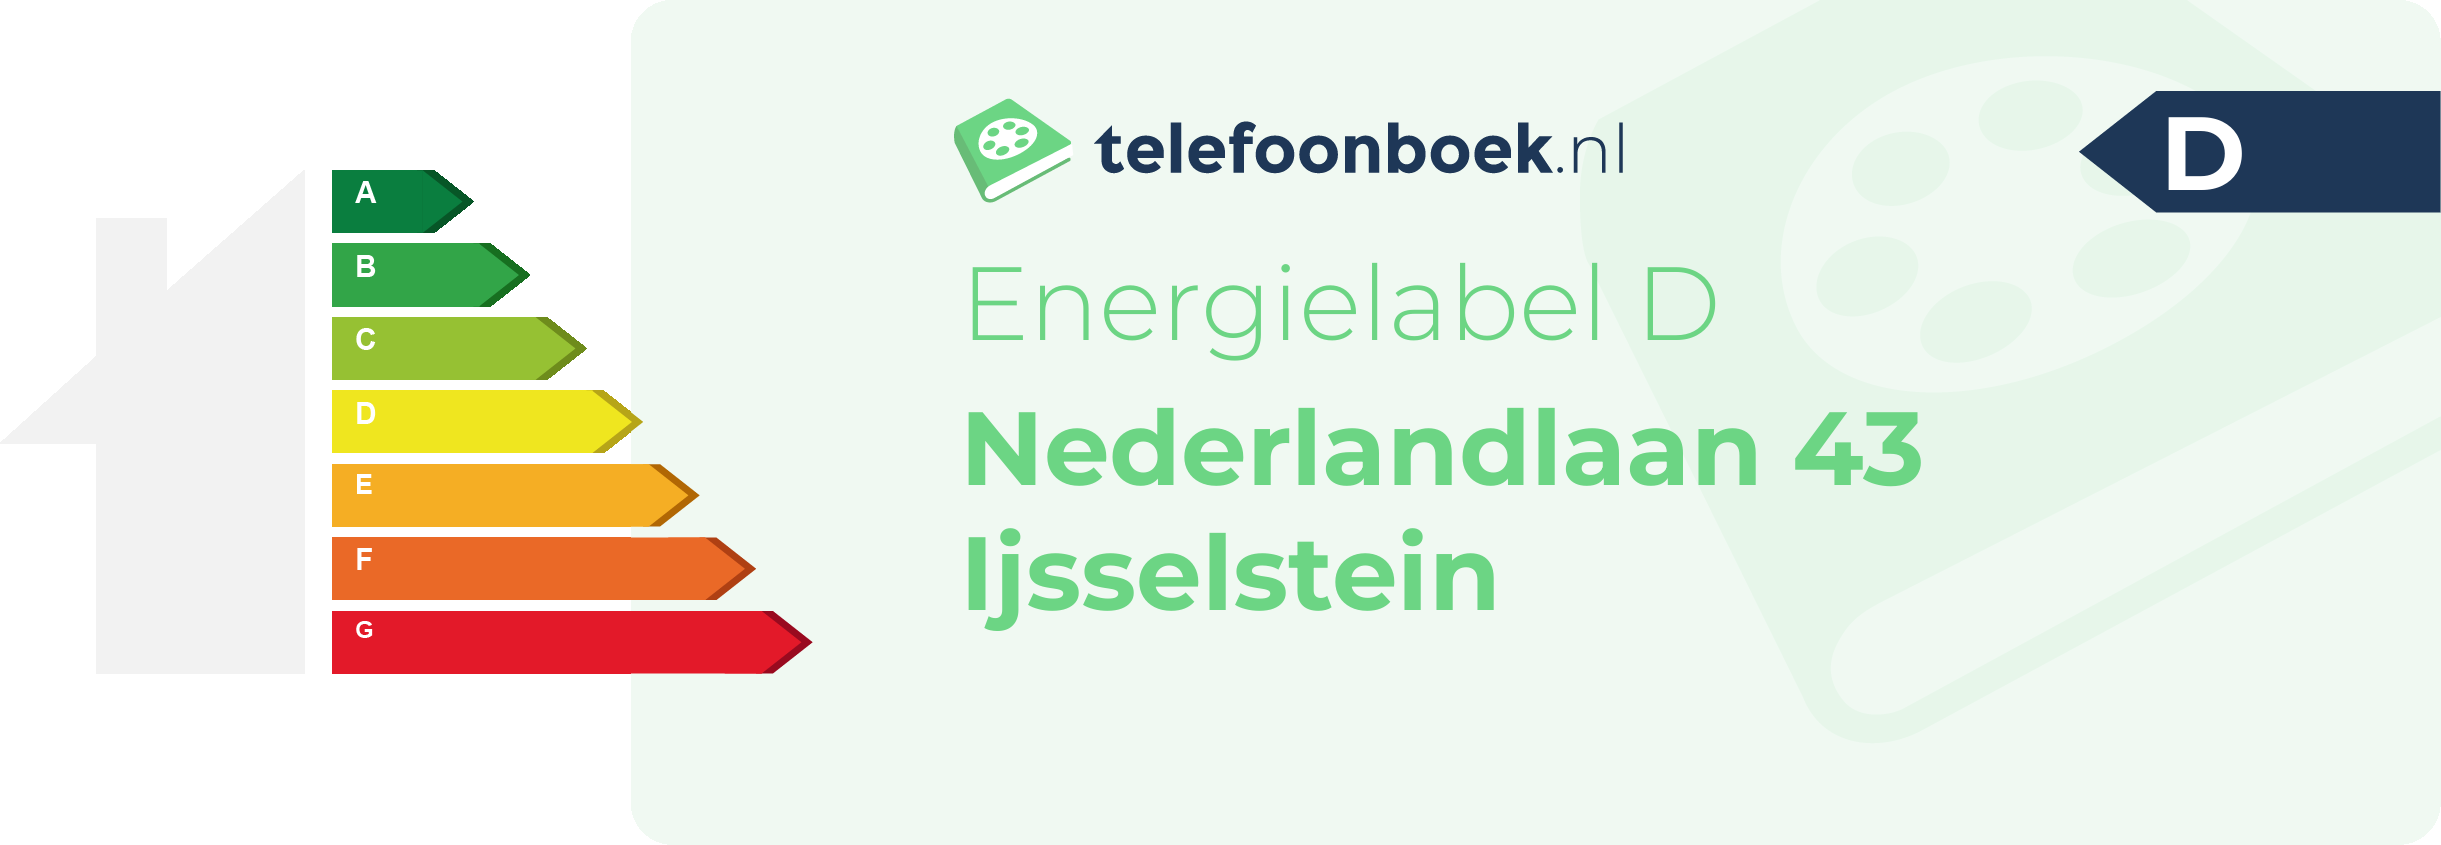 Energielabel Nederlandlaan 43 Ijsselstein